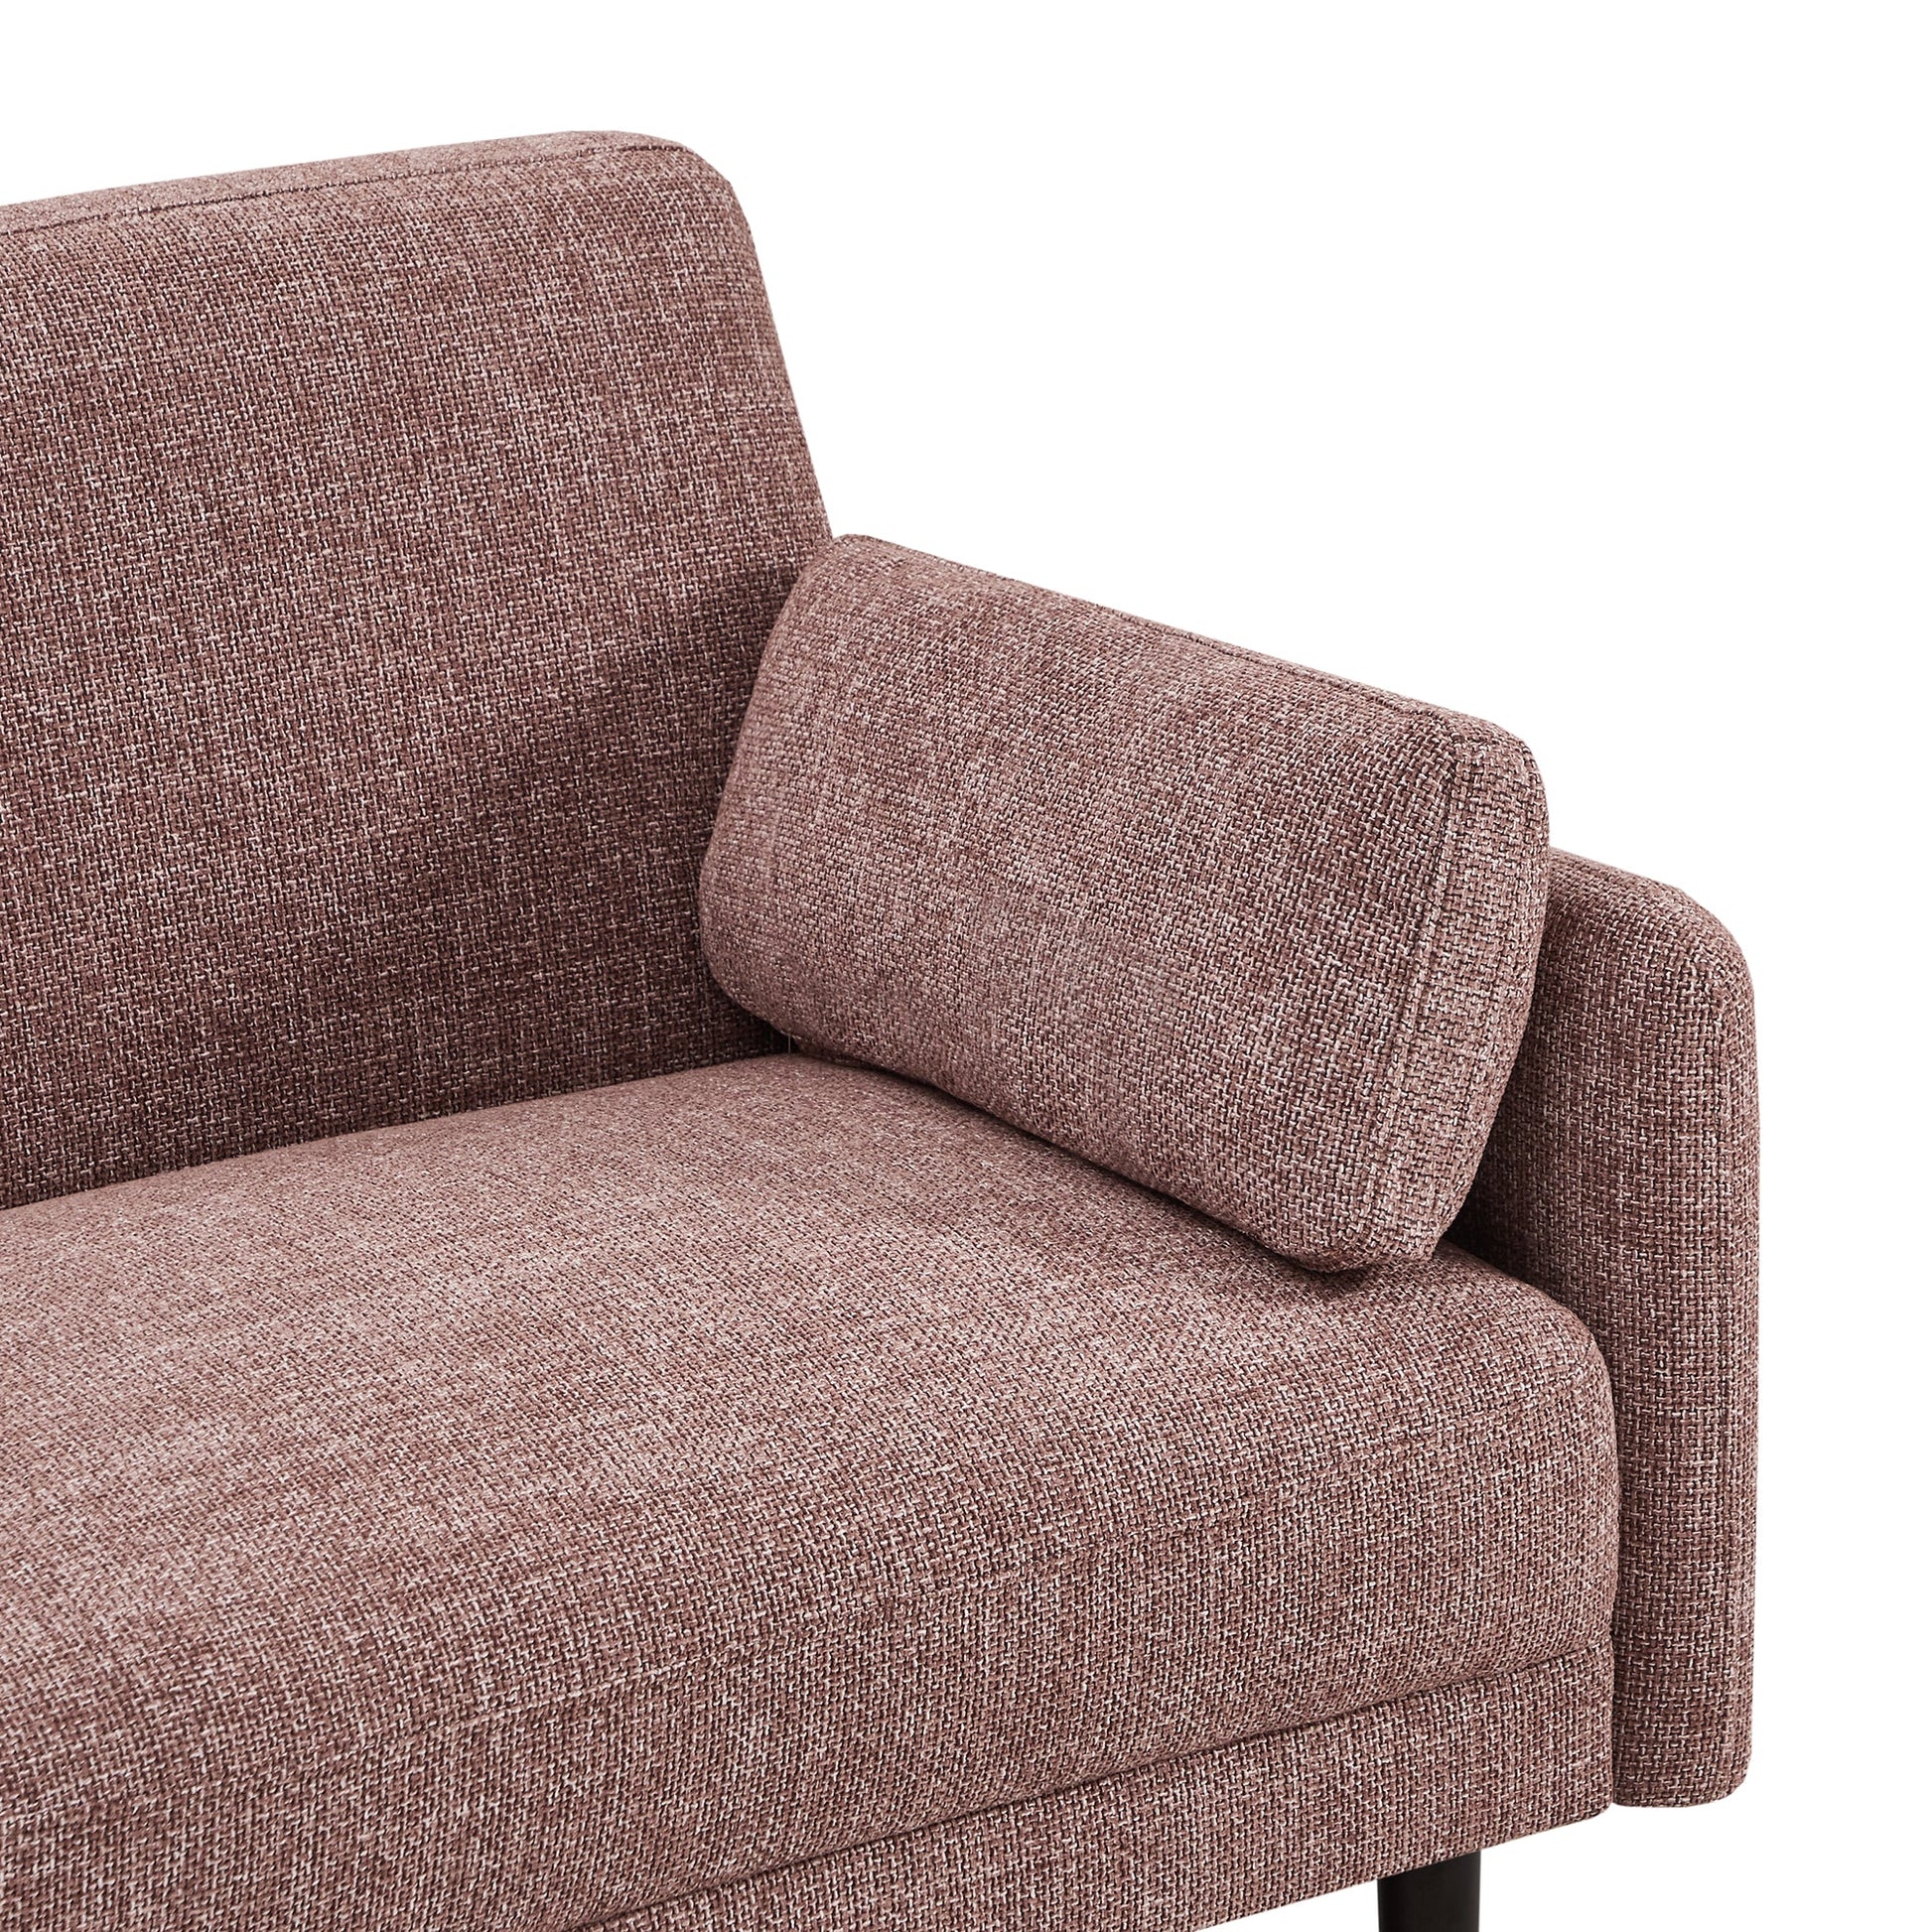 CHITA LIVING-Kinslee Modern 3-Seater Sofa (72.8''W)-Sofas-Fabric-Pink-